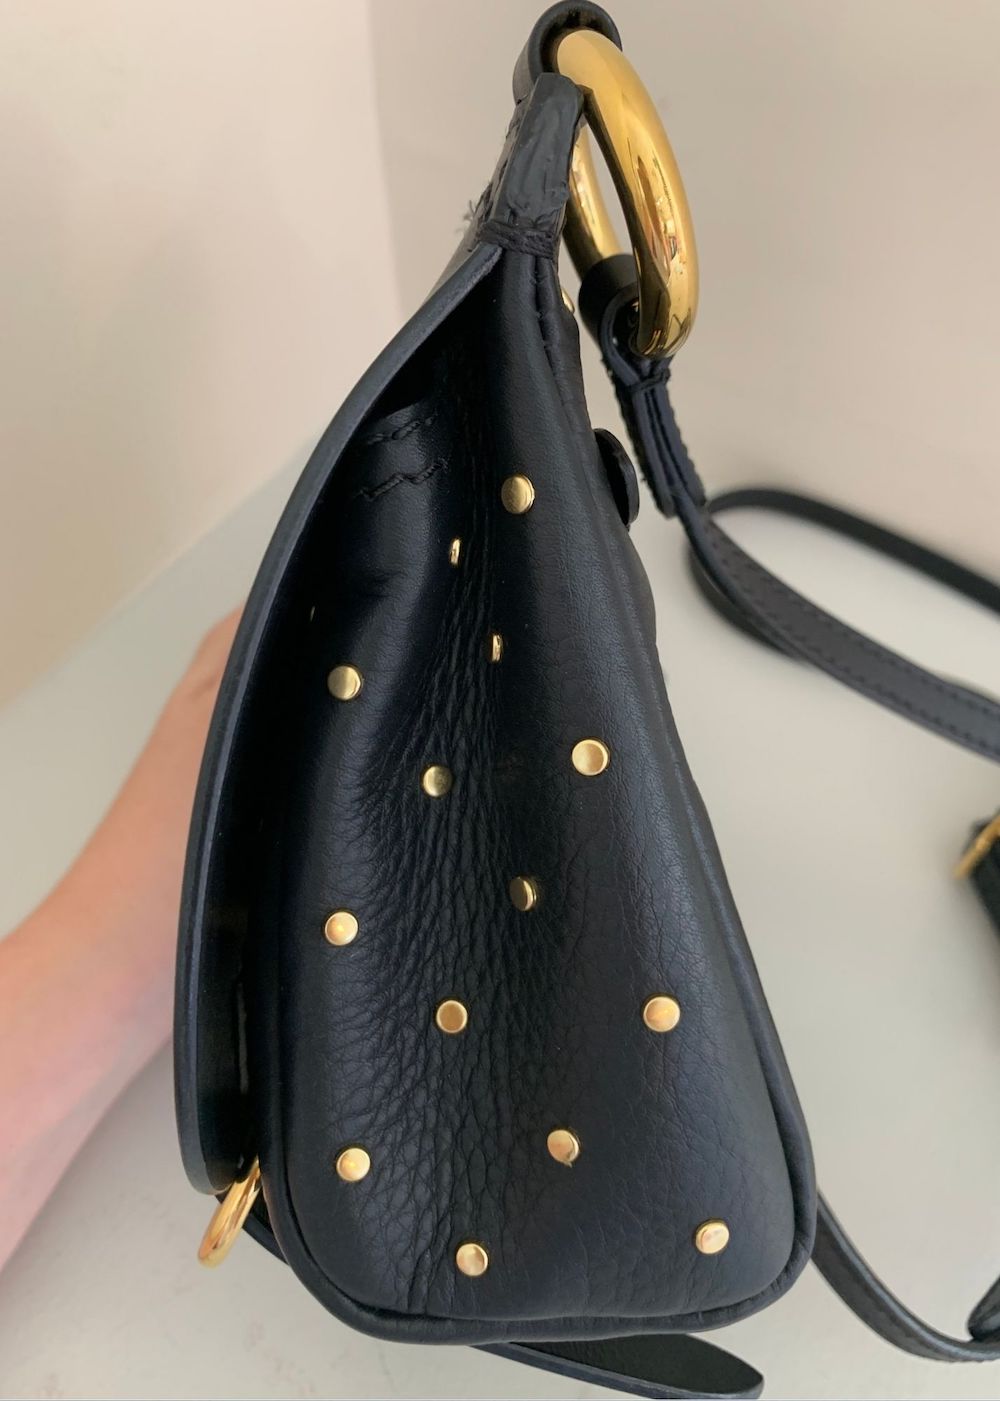 Burberry Bridle Shoulder Bag - Black Shoulder Bags, Handbags